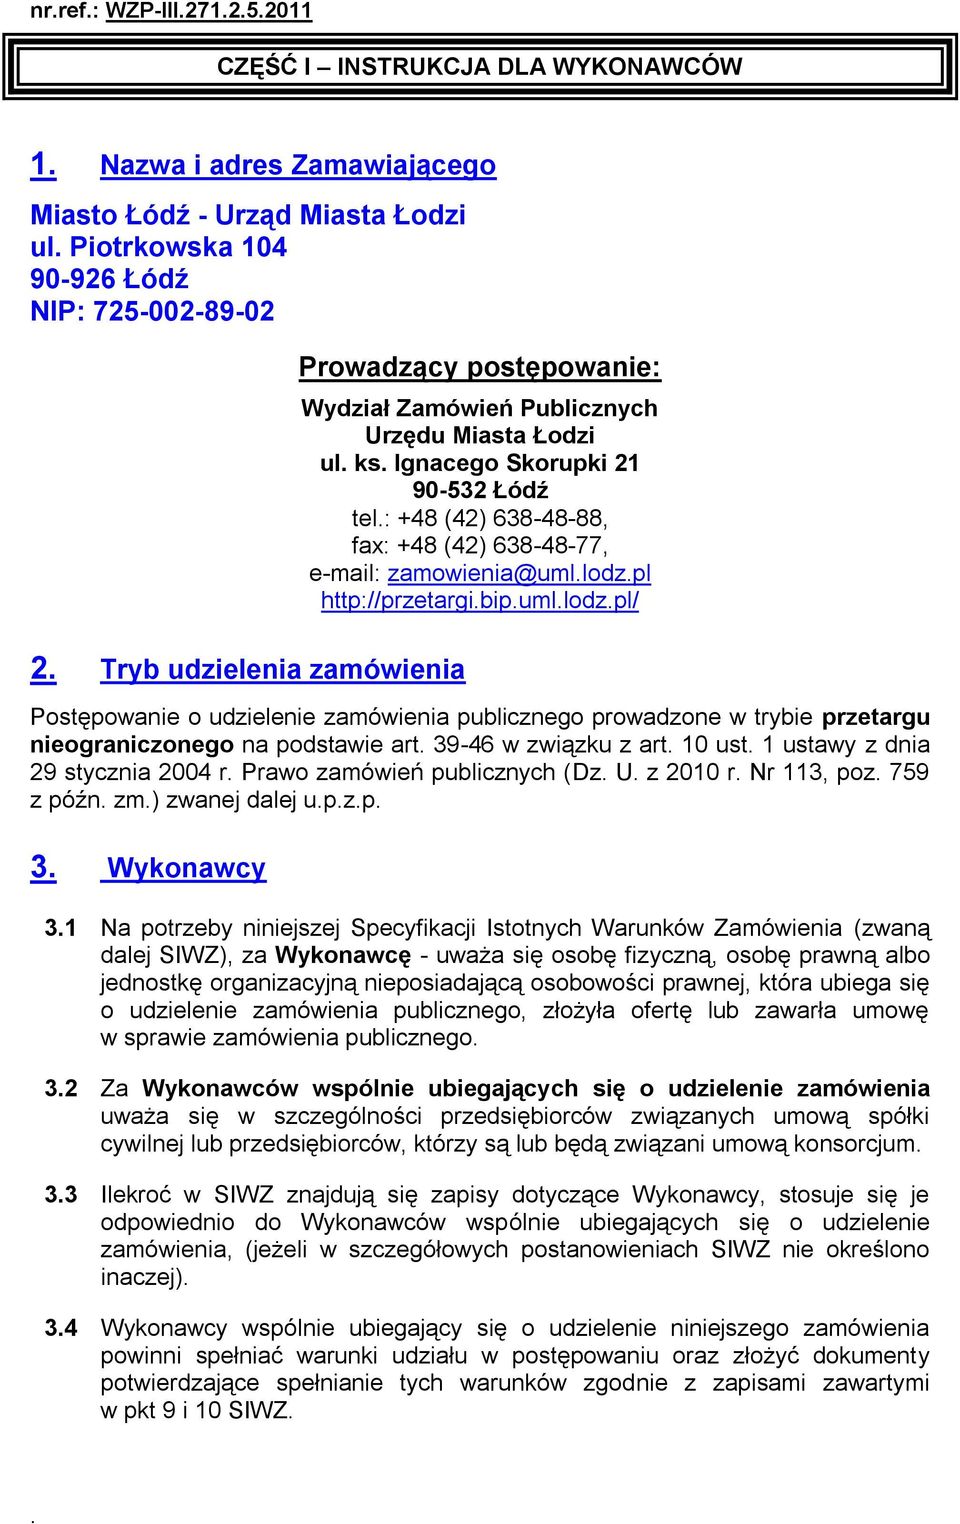 : +48 (42) 638-48-88, fax: +48 (42) 638-48-77, e-mail: zamowienia@uml.lodz.pl http://przetargi.bip.uml.lodz.pl/ Postępowanie o udzielenie zamówienia publicznego prowadzone w trybie przetargu nieograniczonego na podstawie art.